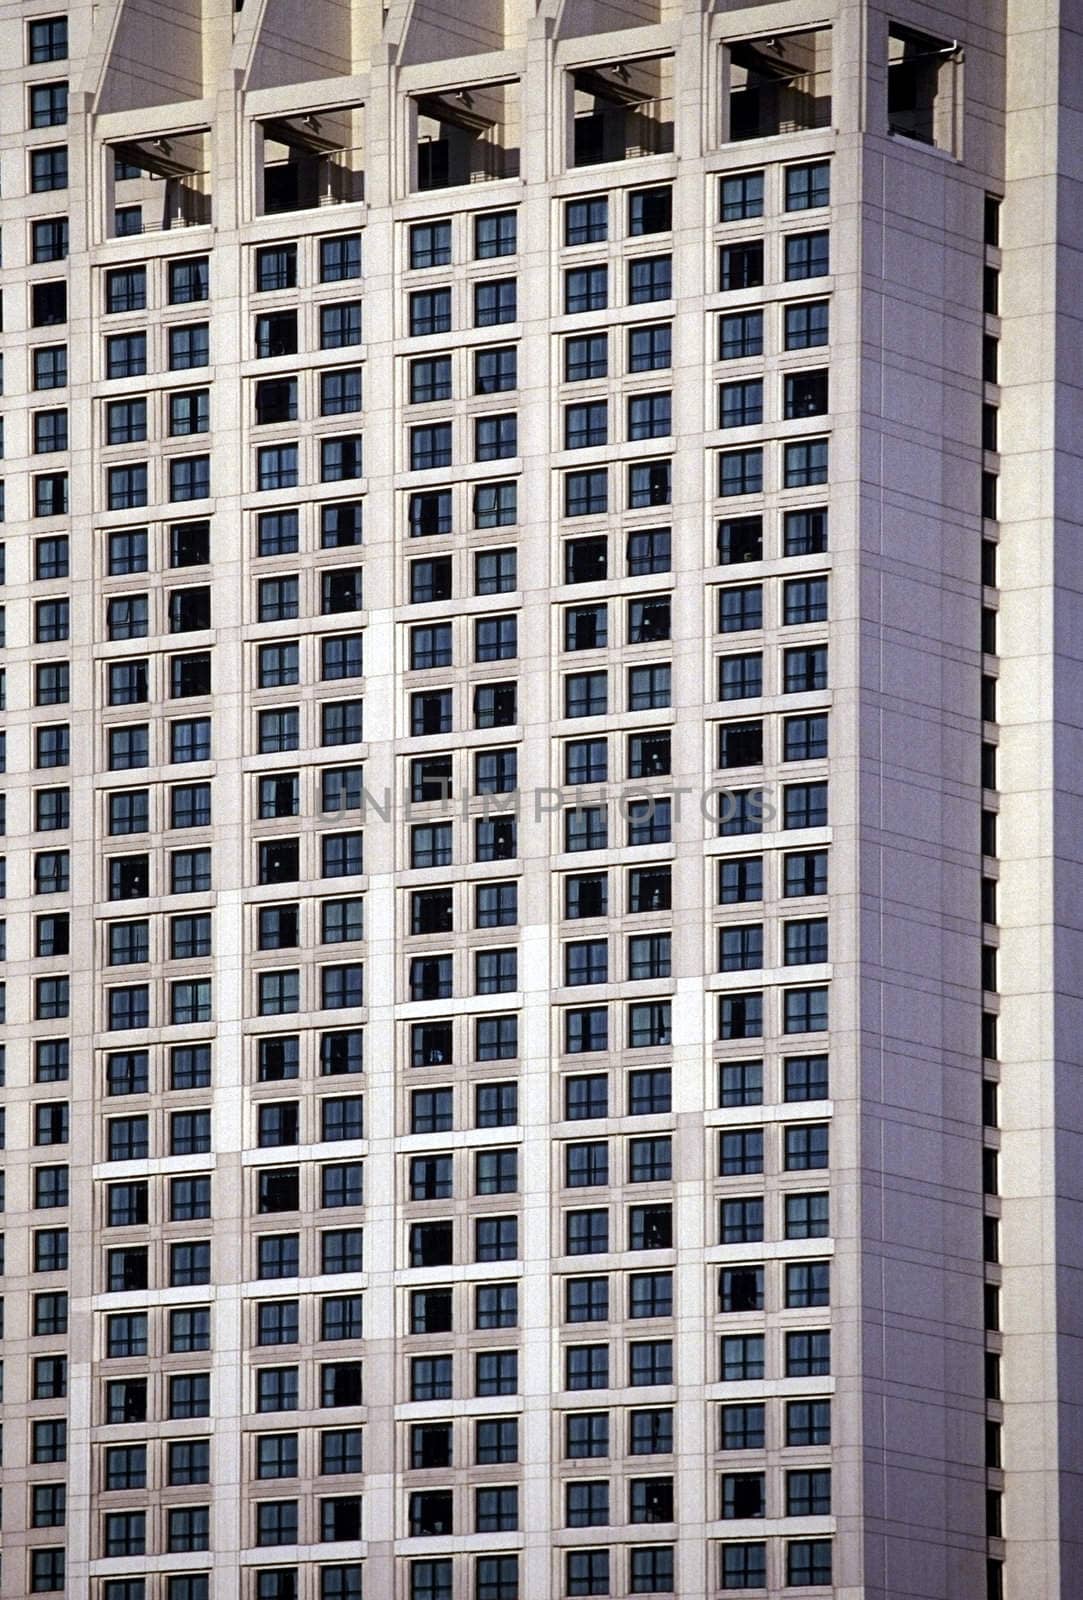 Skyscraper by jol66